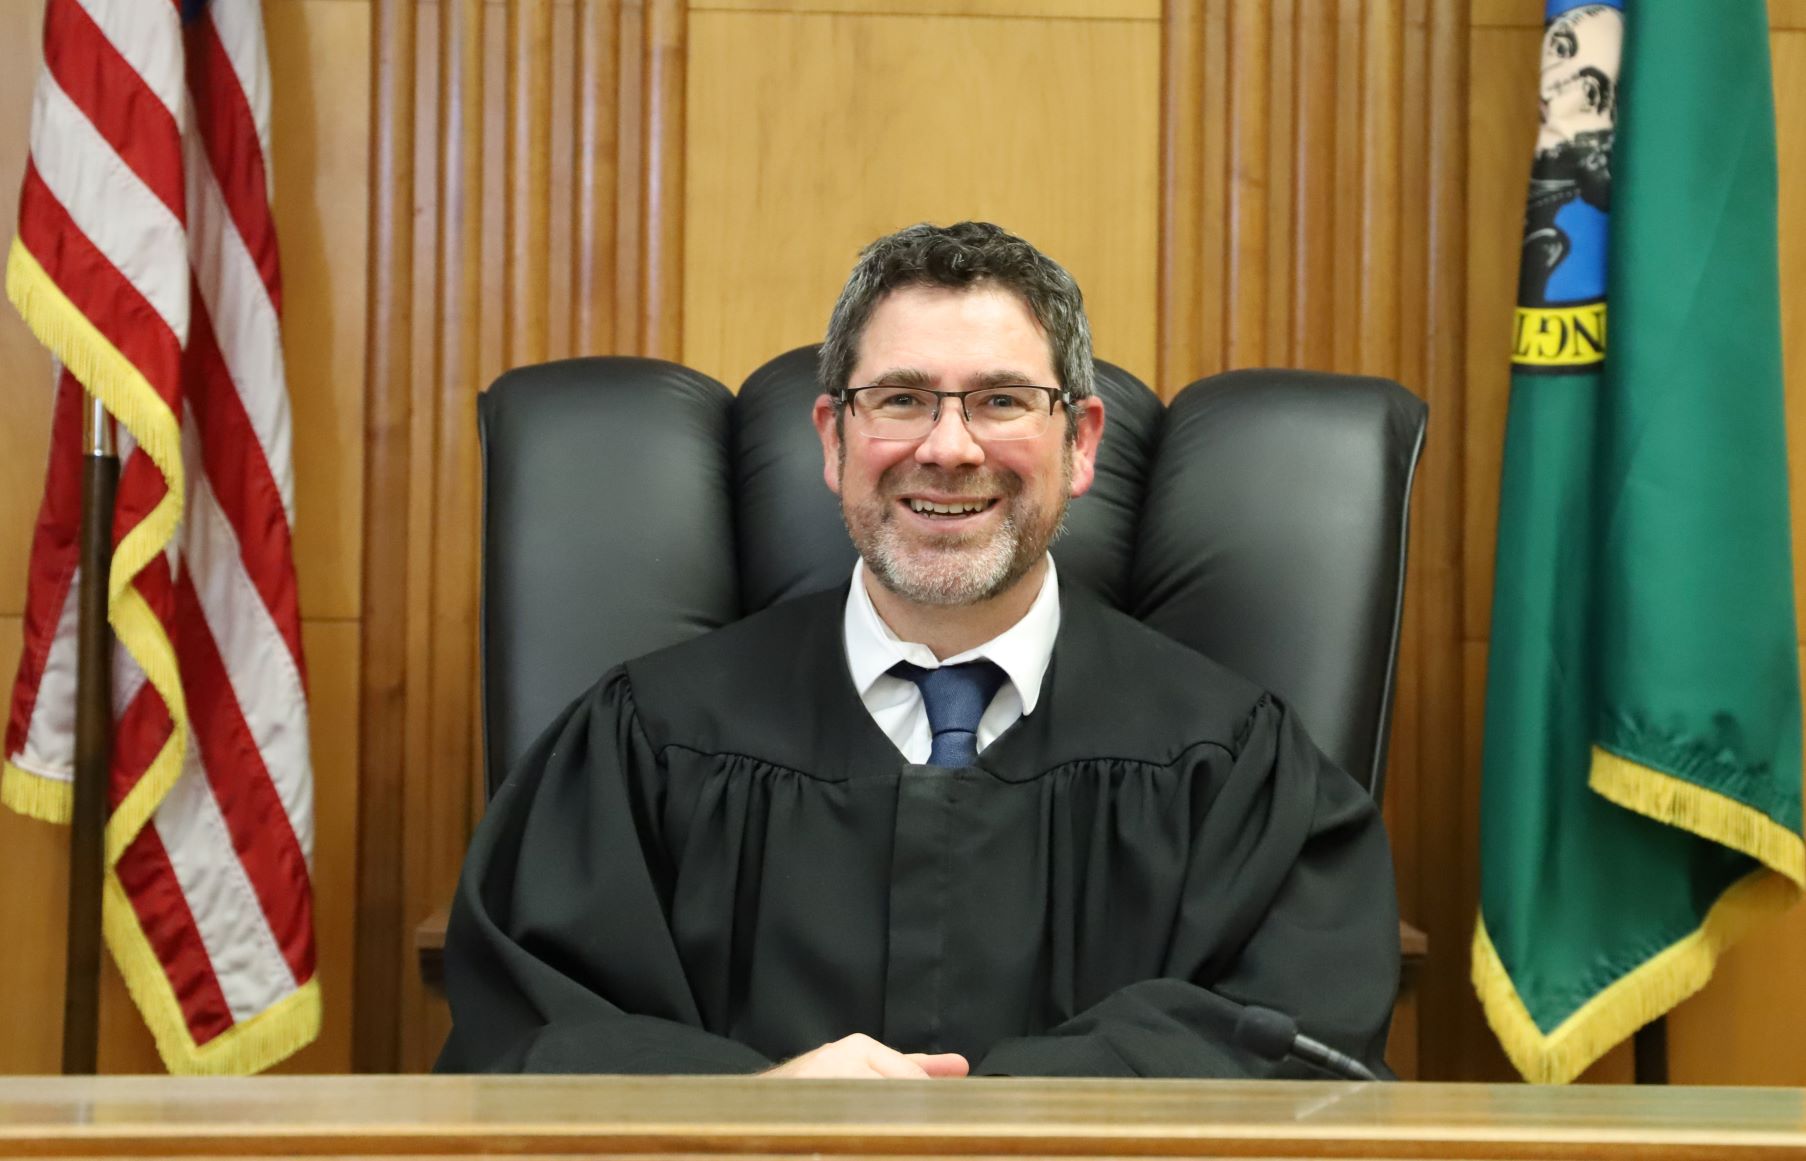 Judge Shane Seaman